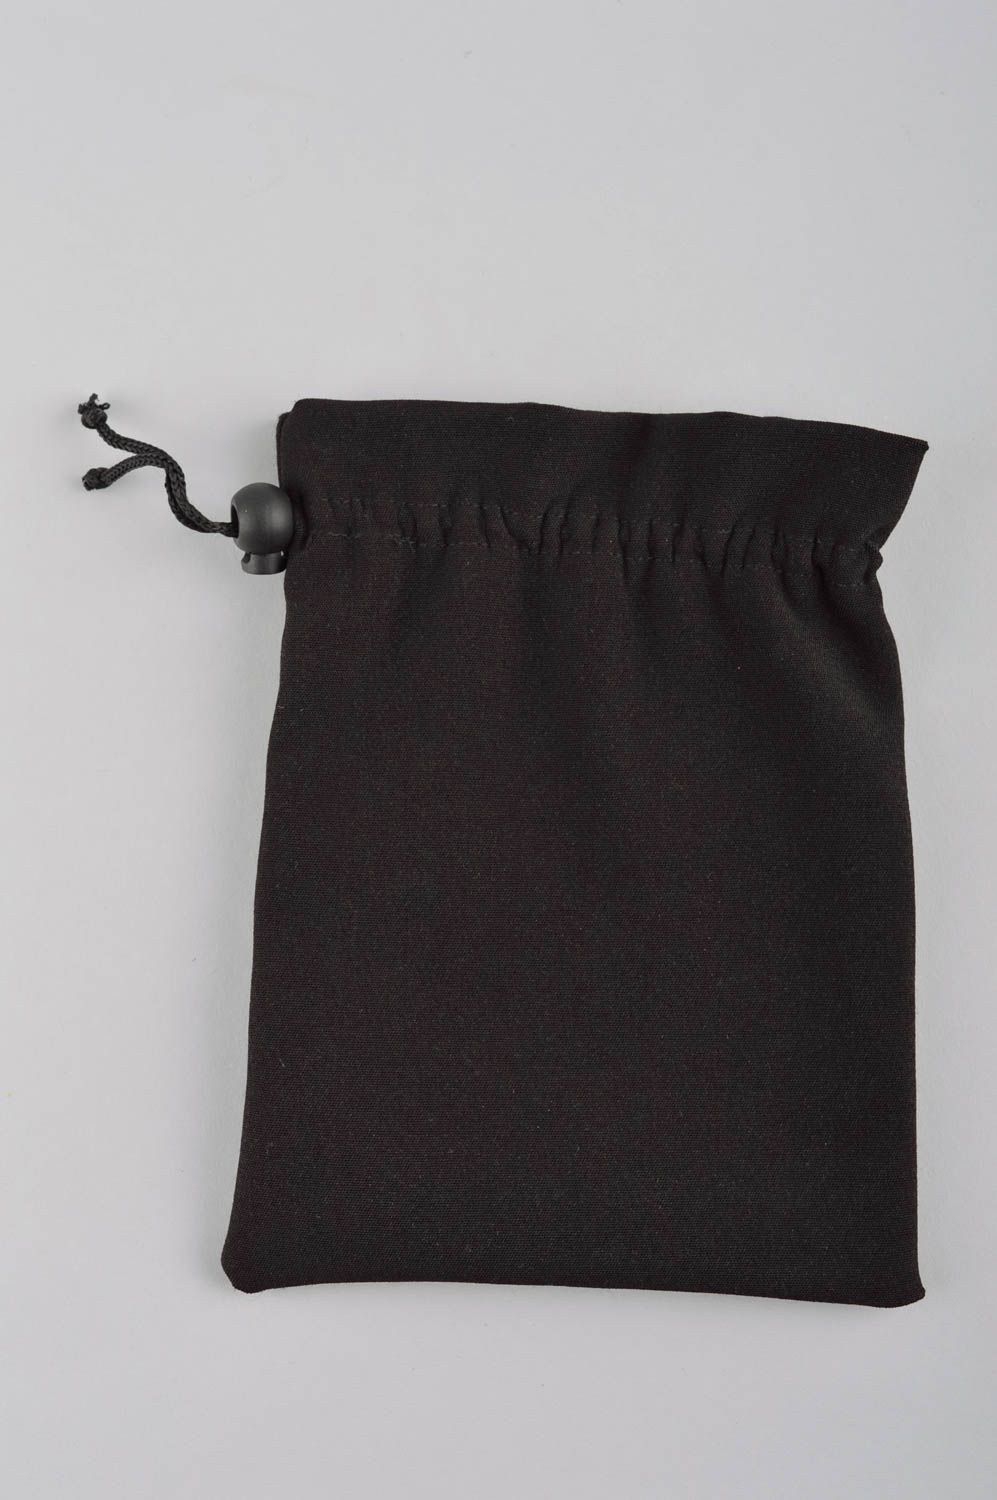 Кошелек из ткани мешочек для монет ручной работы с вышивкой женский кошелек фото 3